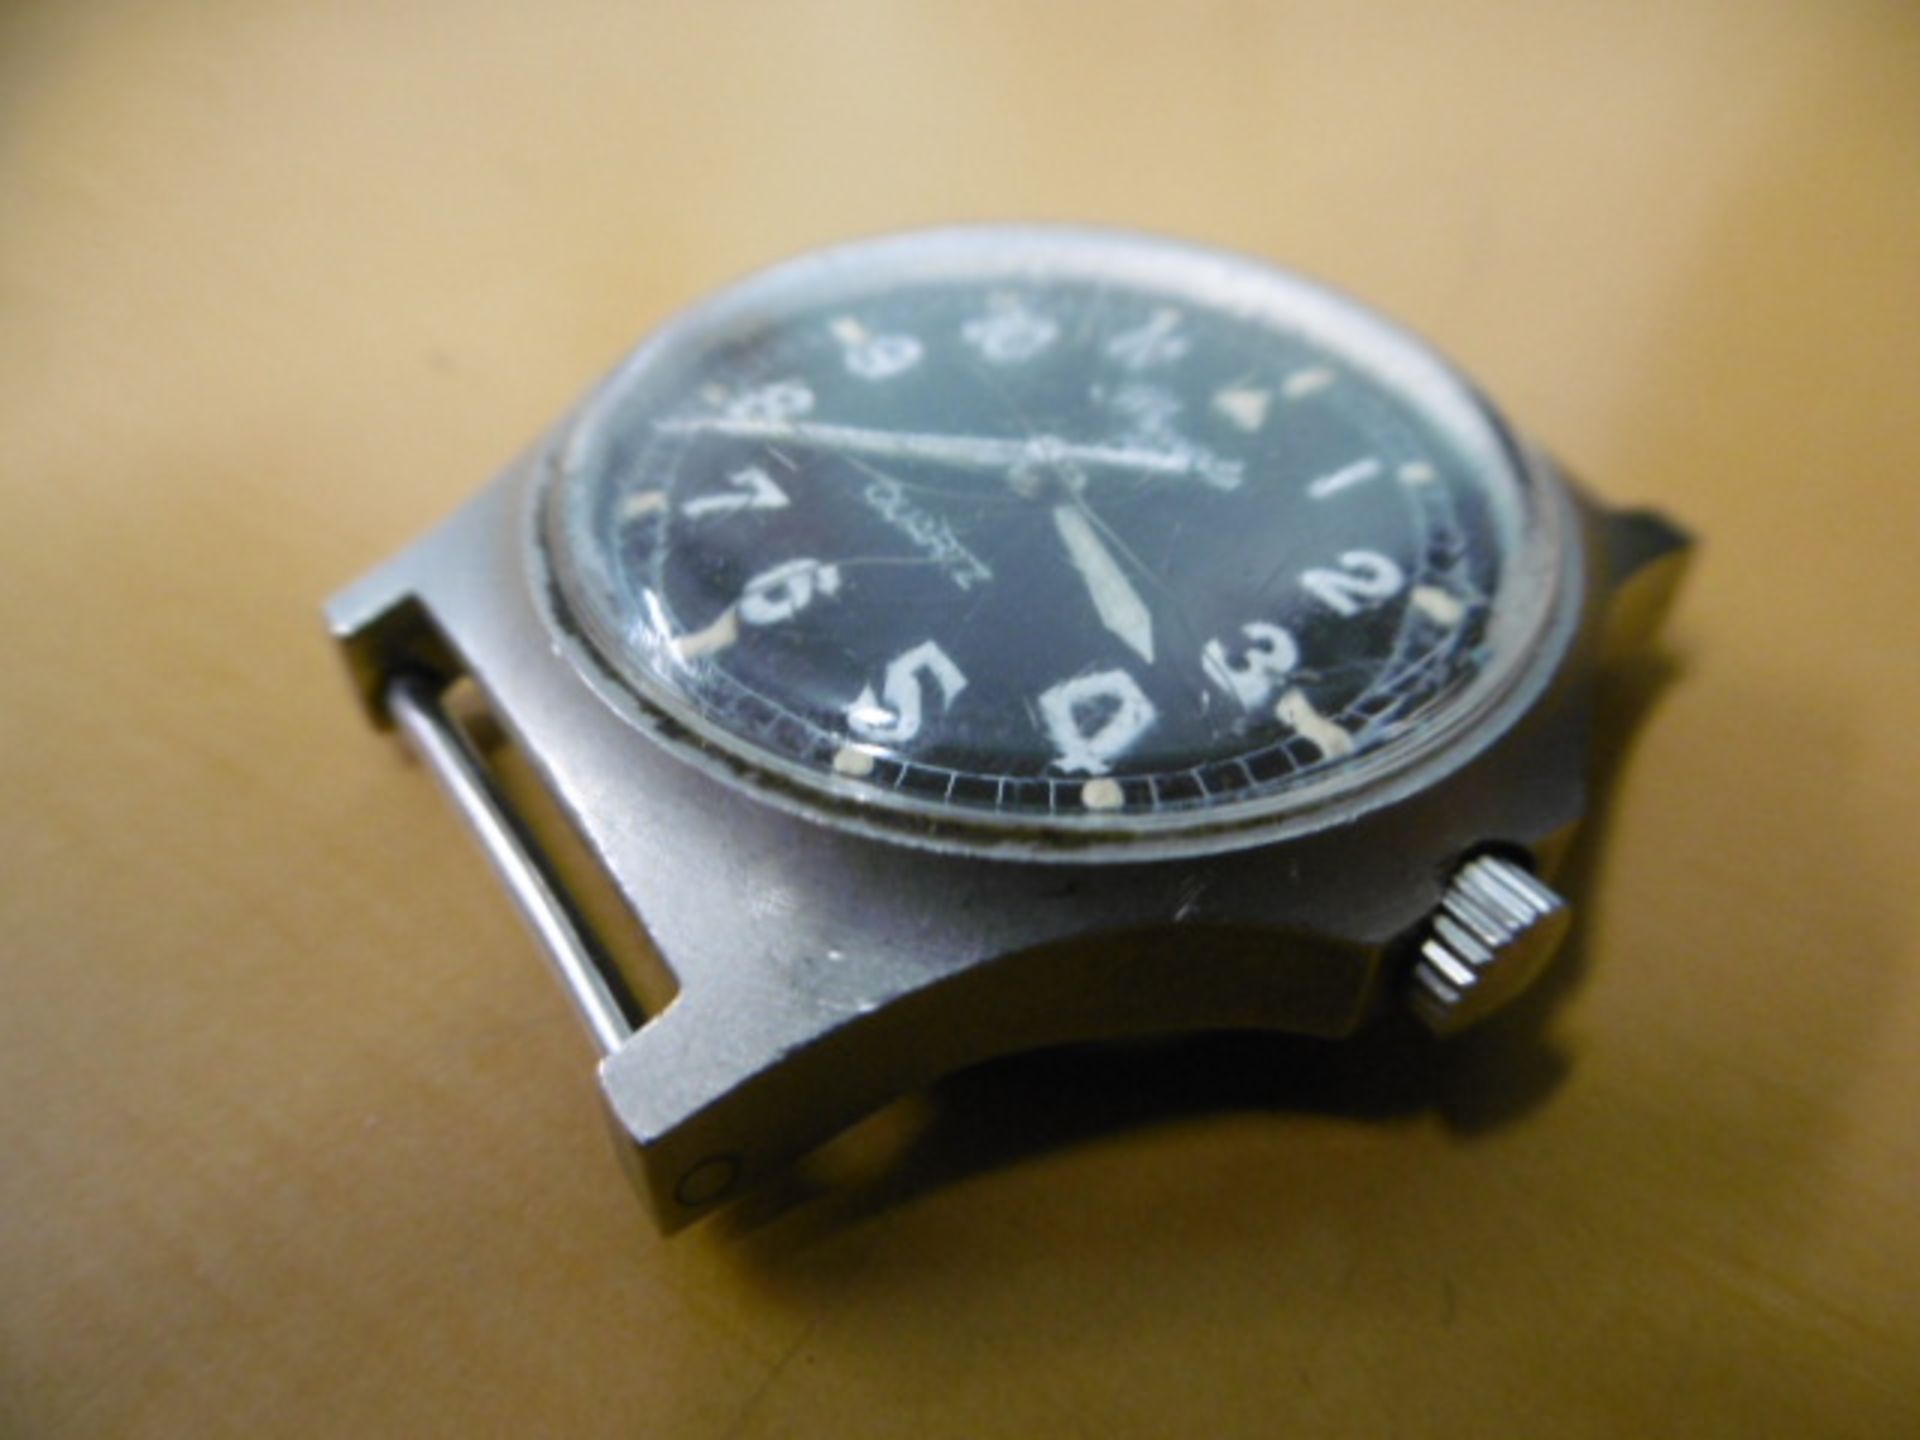 2 x Precista quartz wrist watches - Falklands Issue - Image 7 of 9